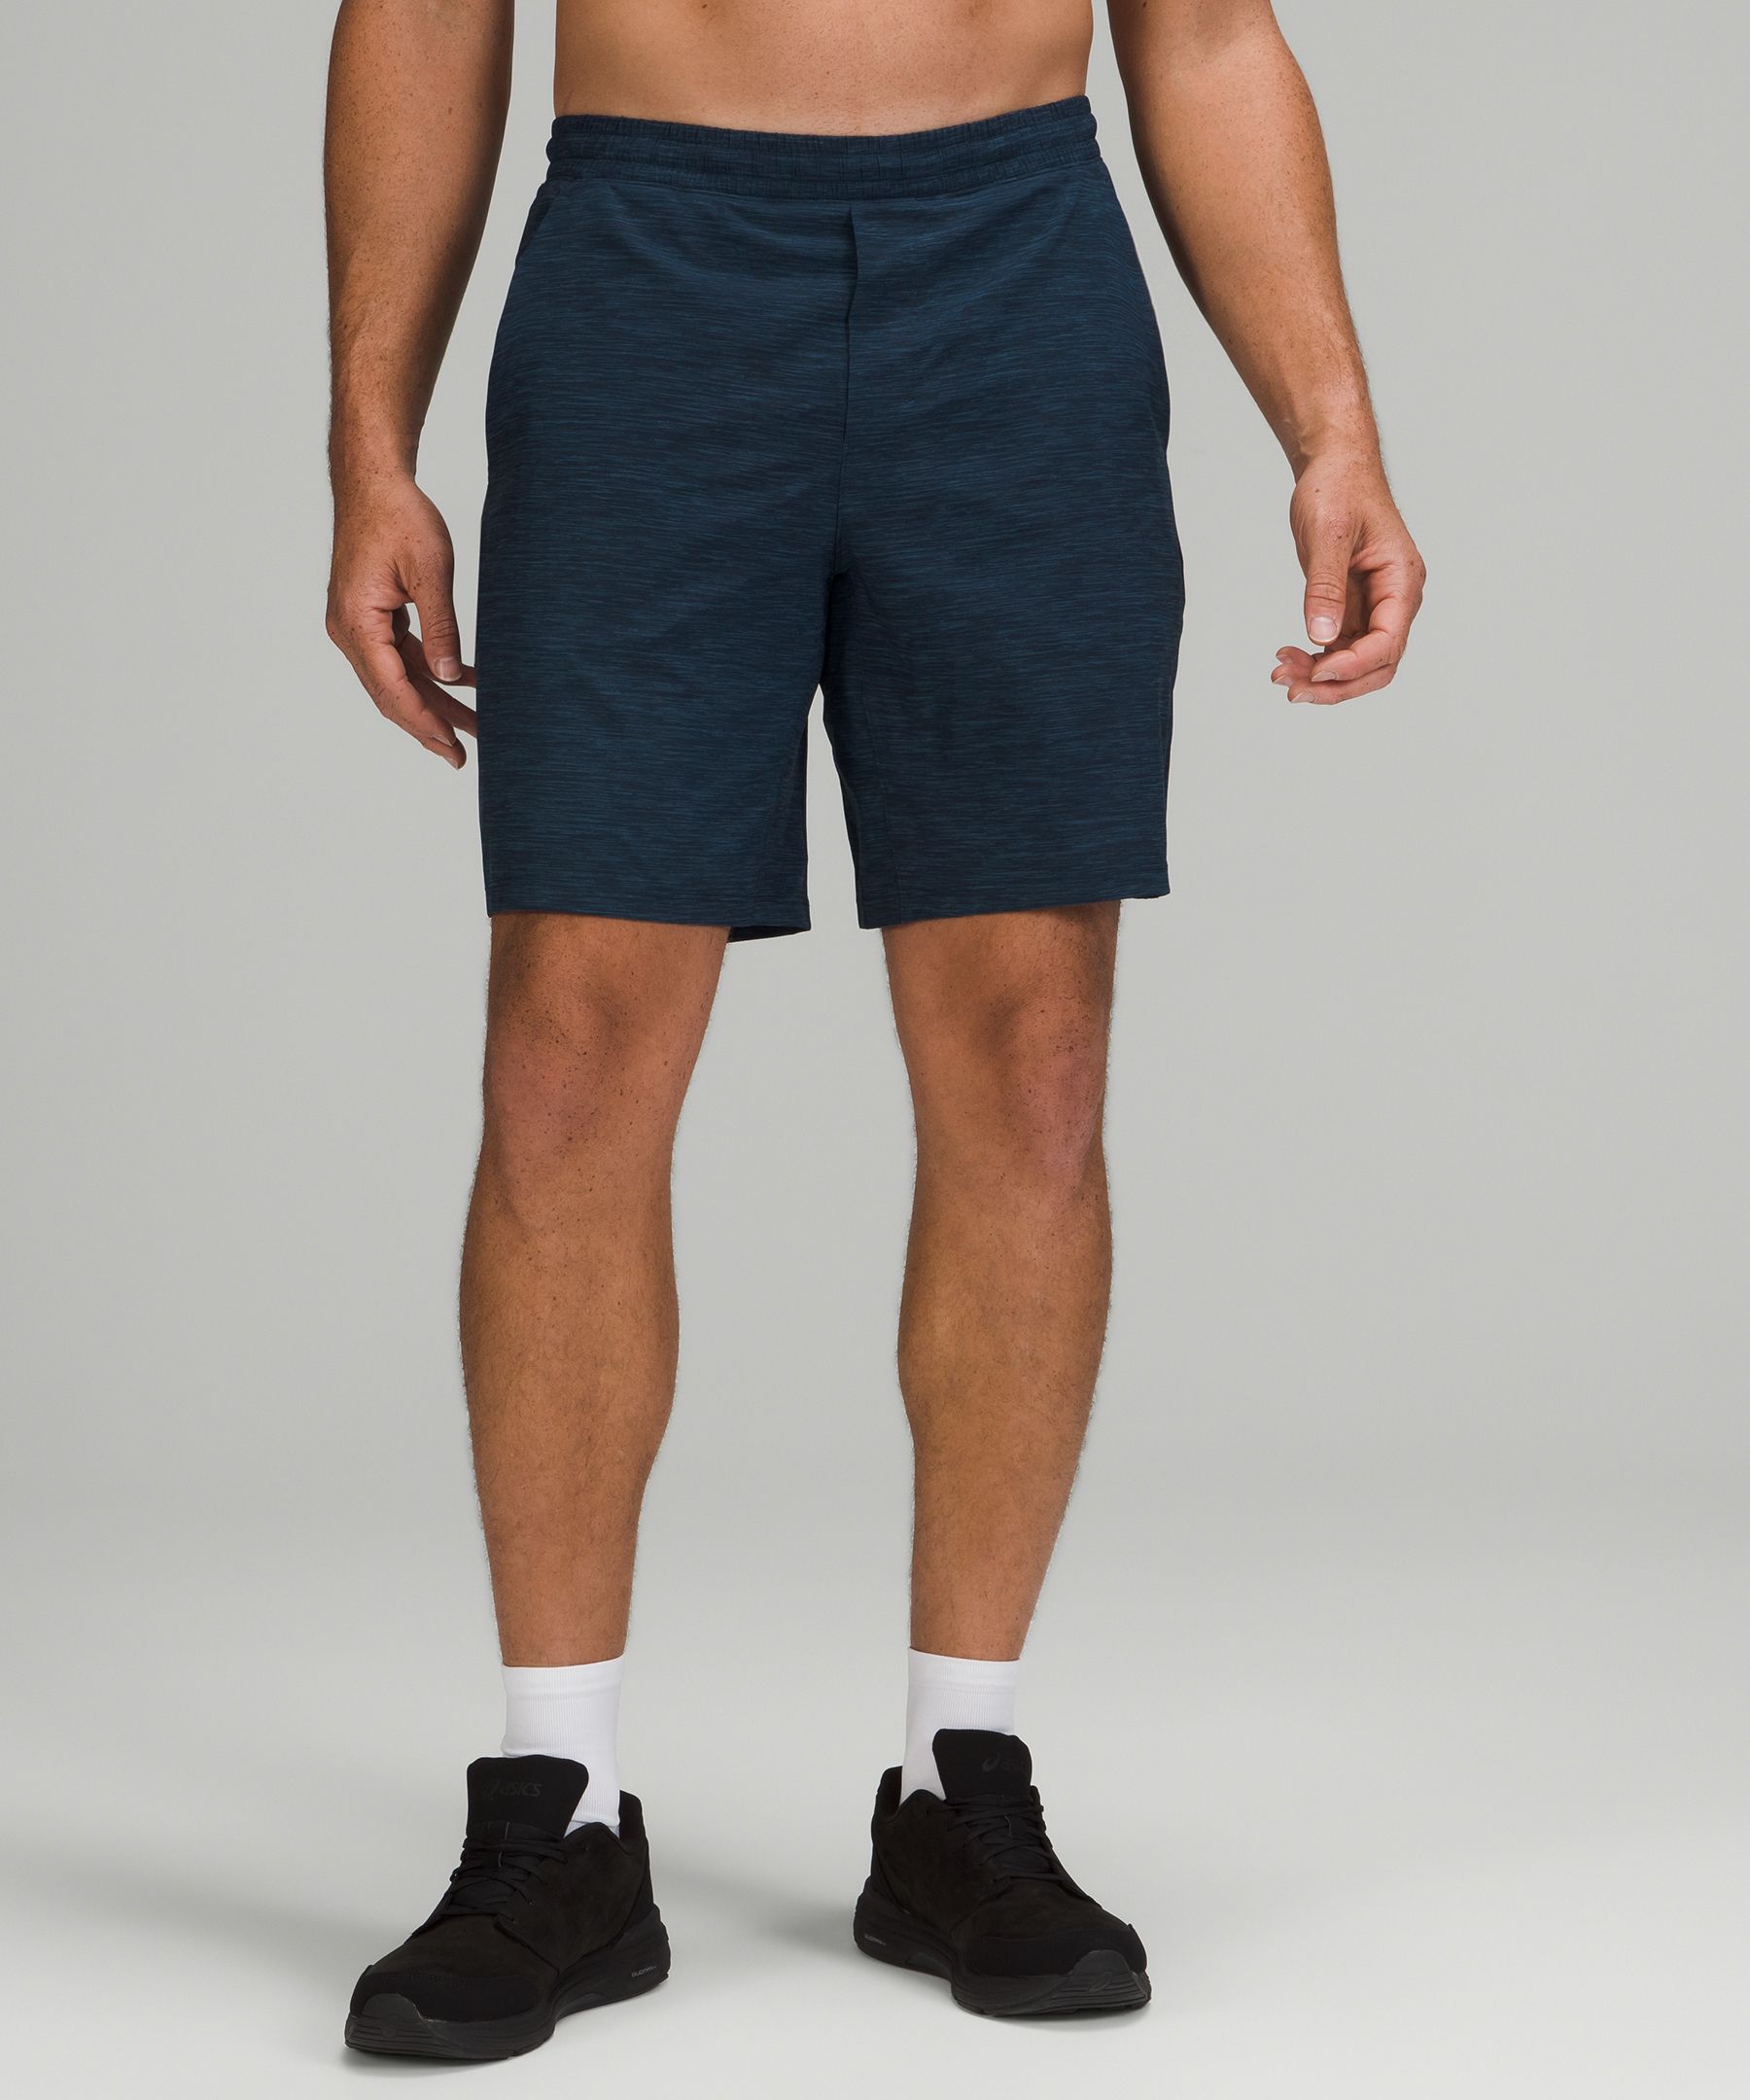 lululemon male shorts